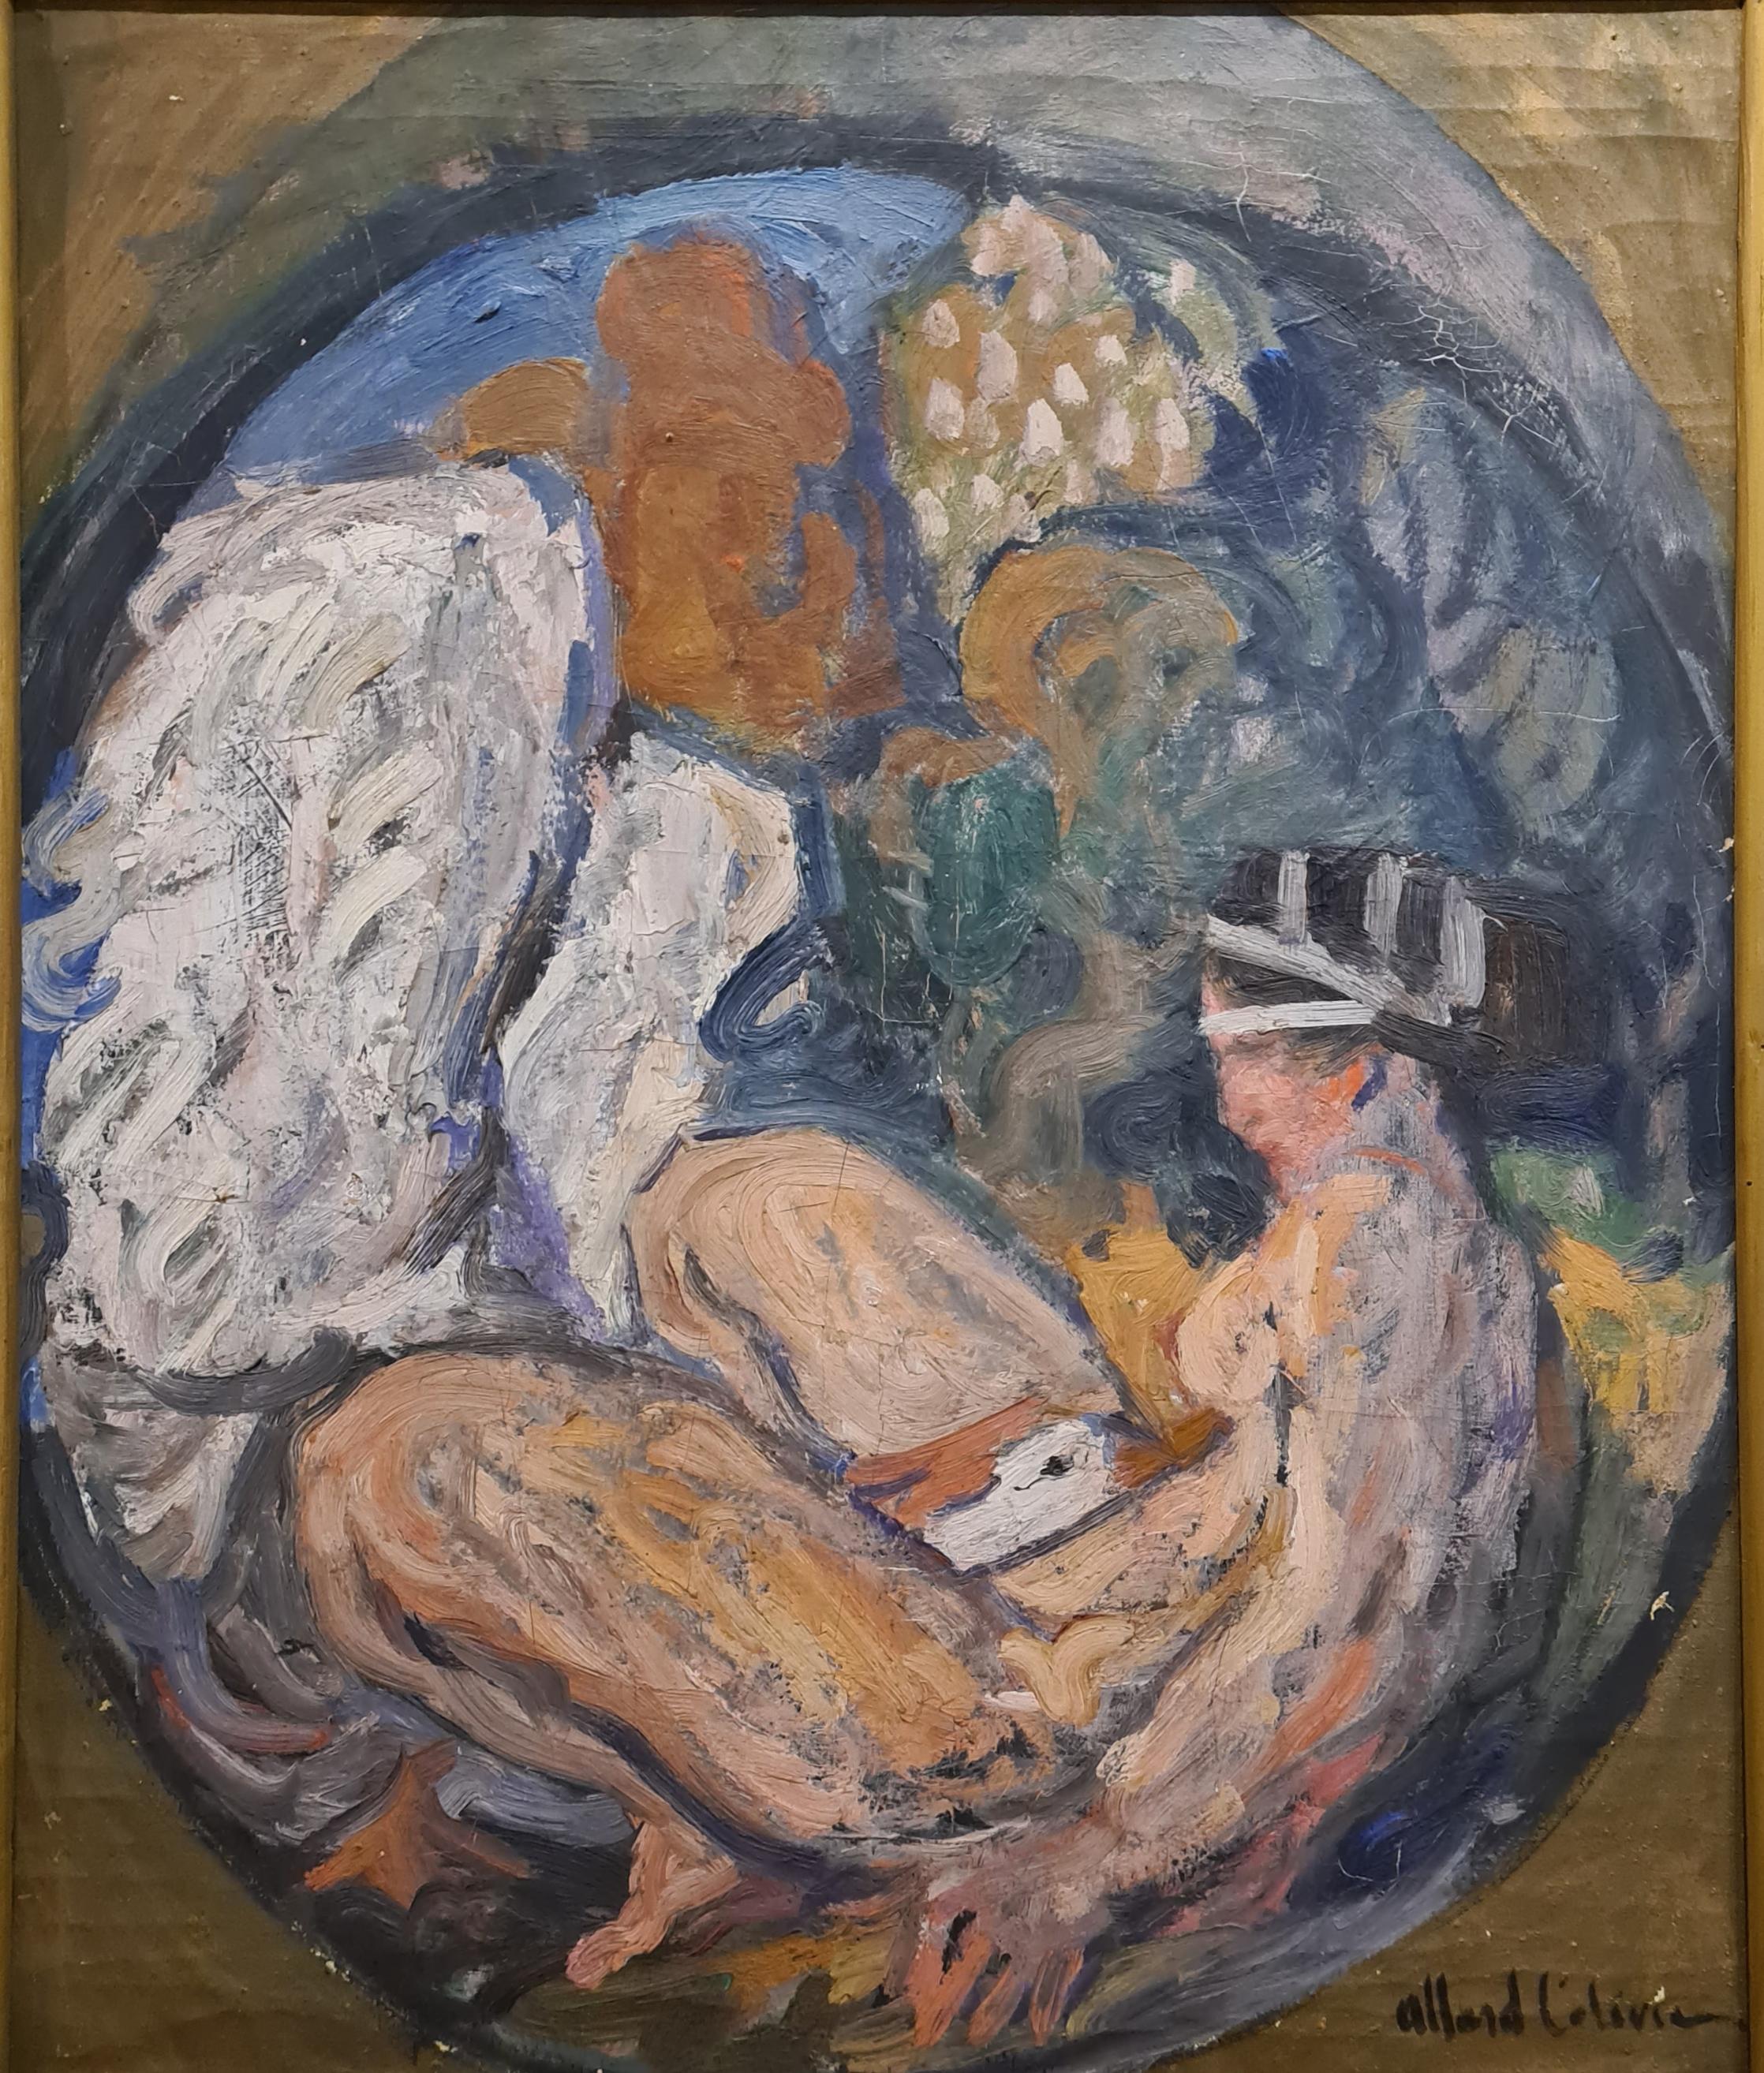 Leda und der Schwan, ein allegorisches Gemälde der Ästhetizismus des frühen 20. Jahrhunderts